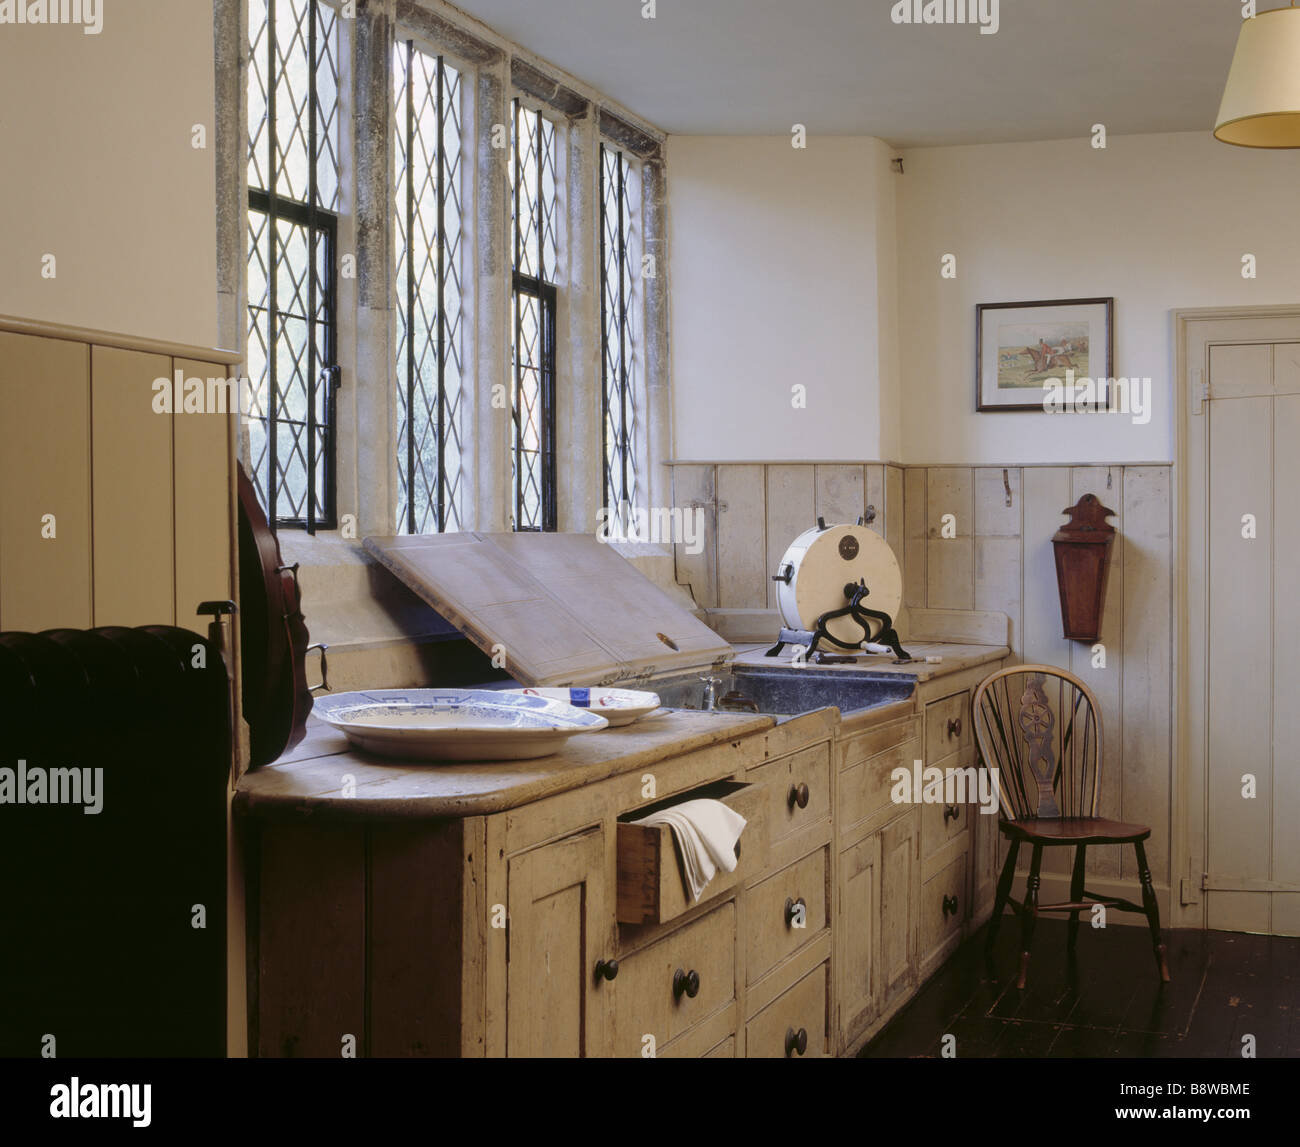 Camera con vista del maggiordomo s dispensa a Ightham Mote che mostra il dissipatore di windows parte del radiatore e la cucina in legno armadi Foto Stock